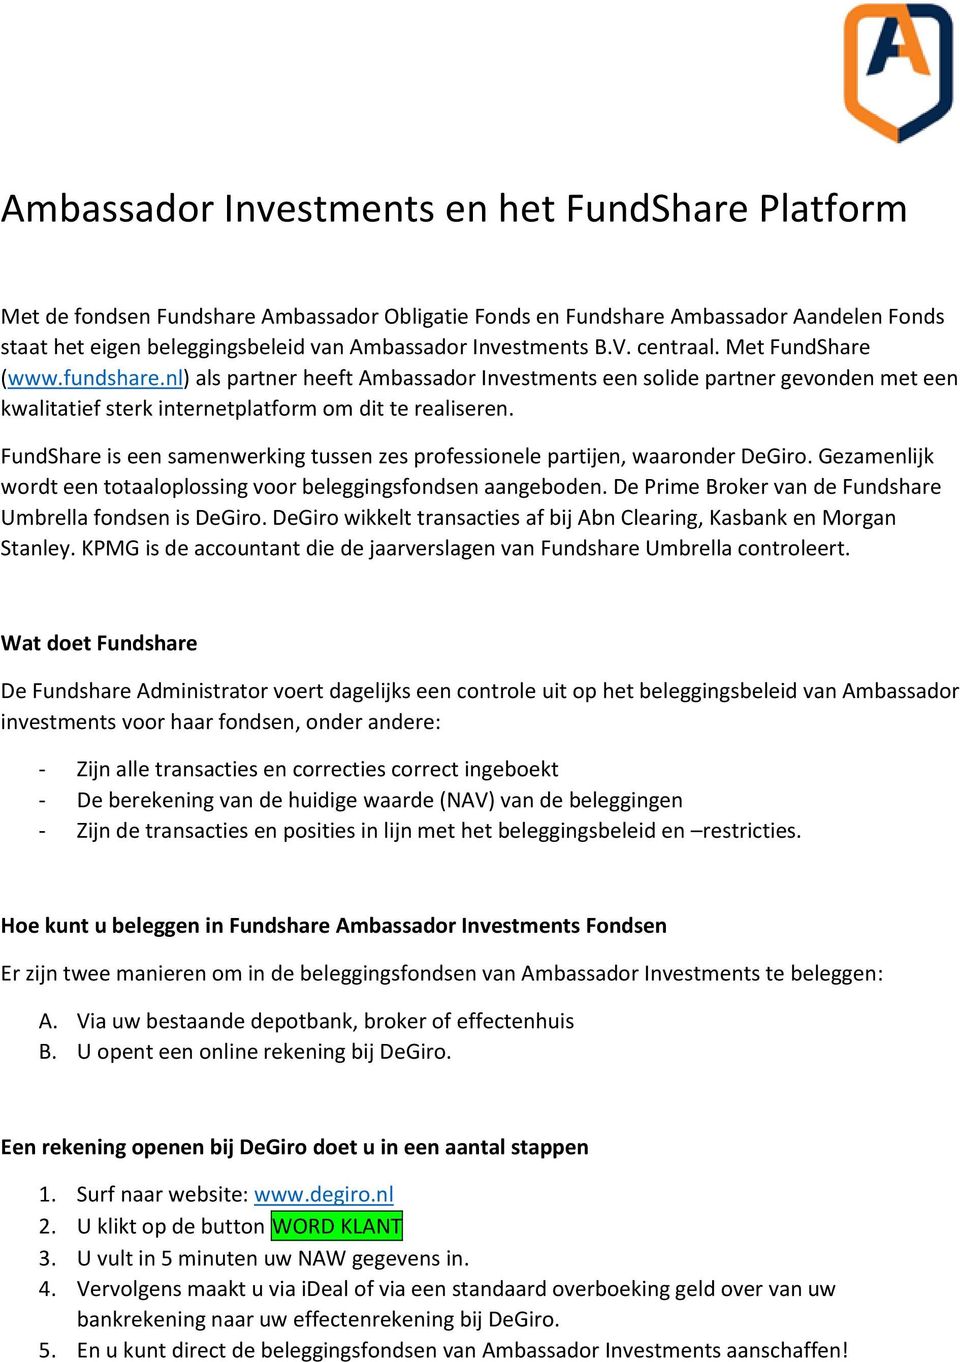 FundShare is een samenwerking tussen zes professionele partijen, waaronder DeGiro. Gezamenlijk wordt een totaaloplossing voor beleggingsfondsen aangeboden.